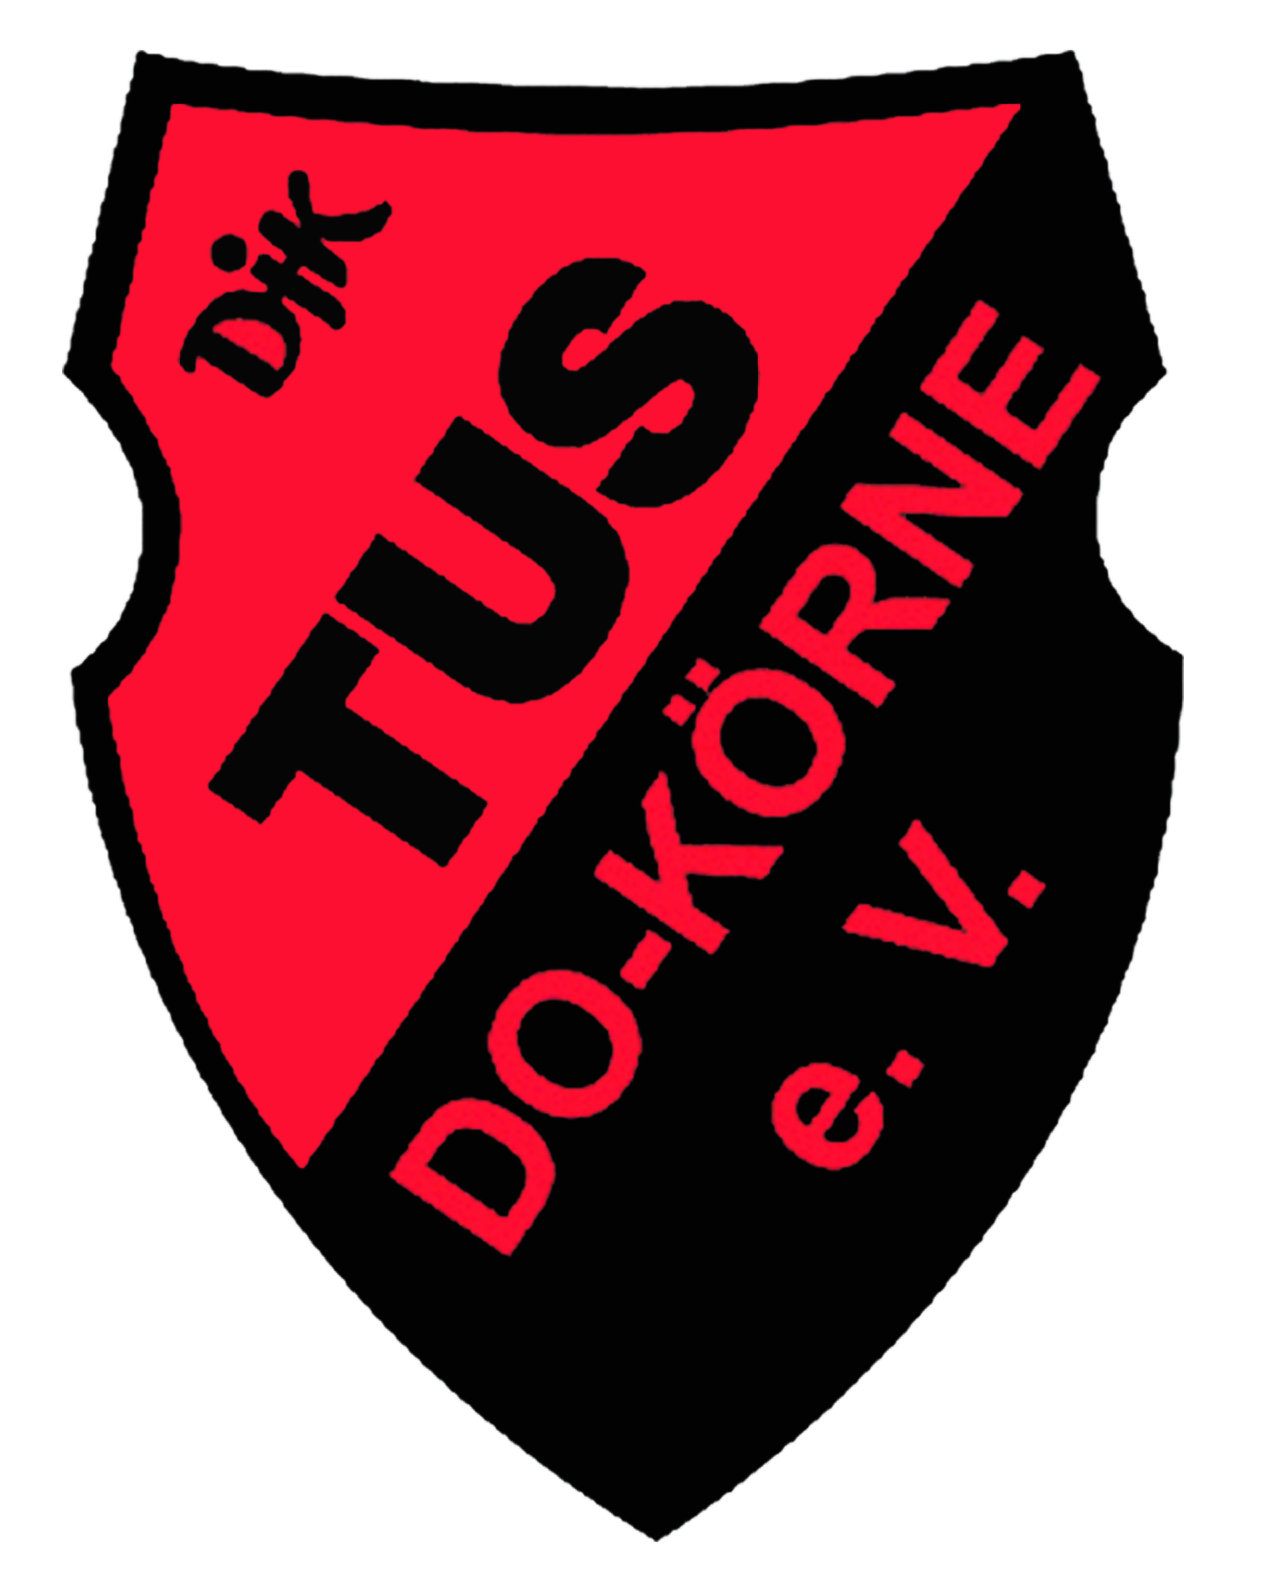 DJK TuS Körne